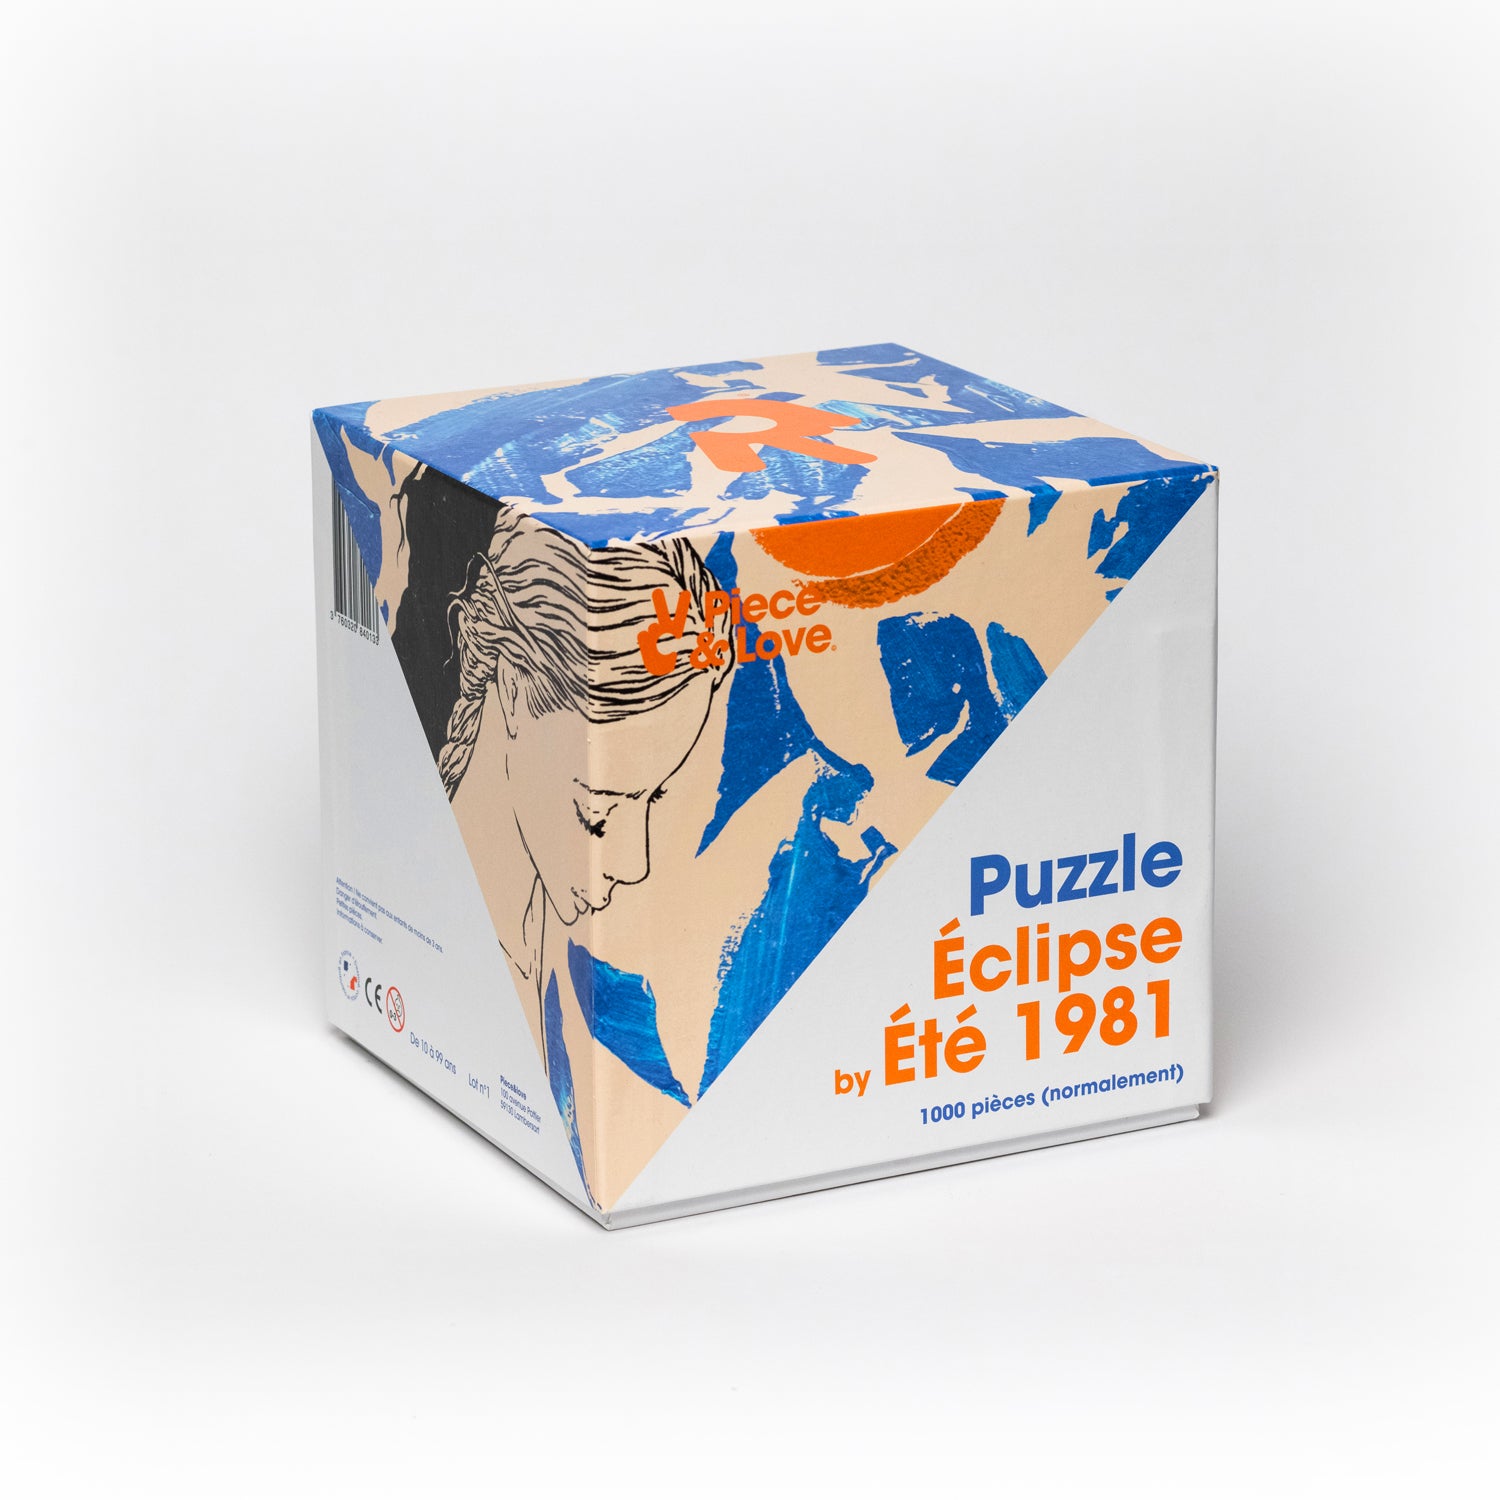 Eclipse by Été 1981